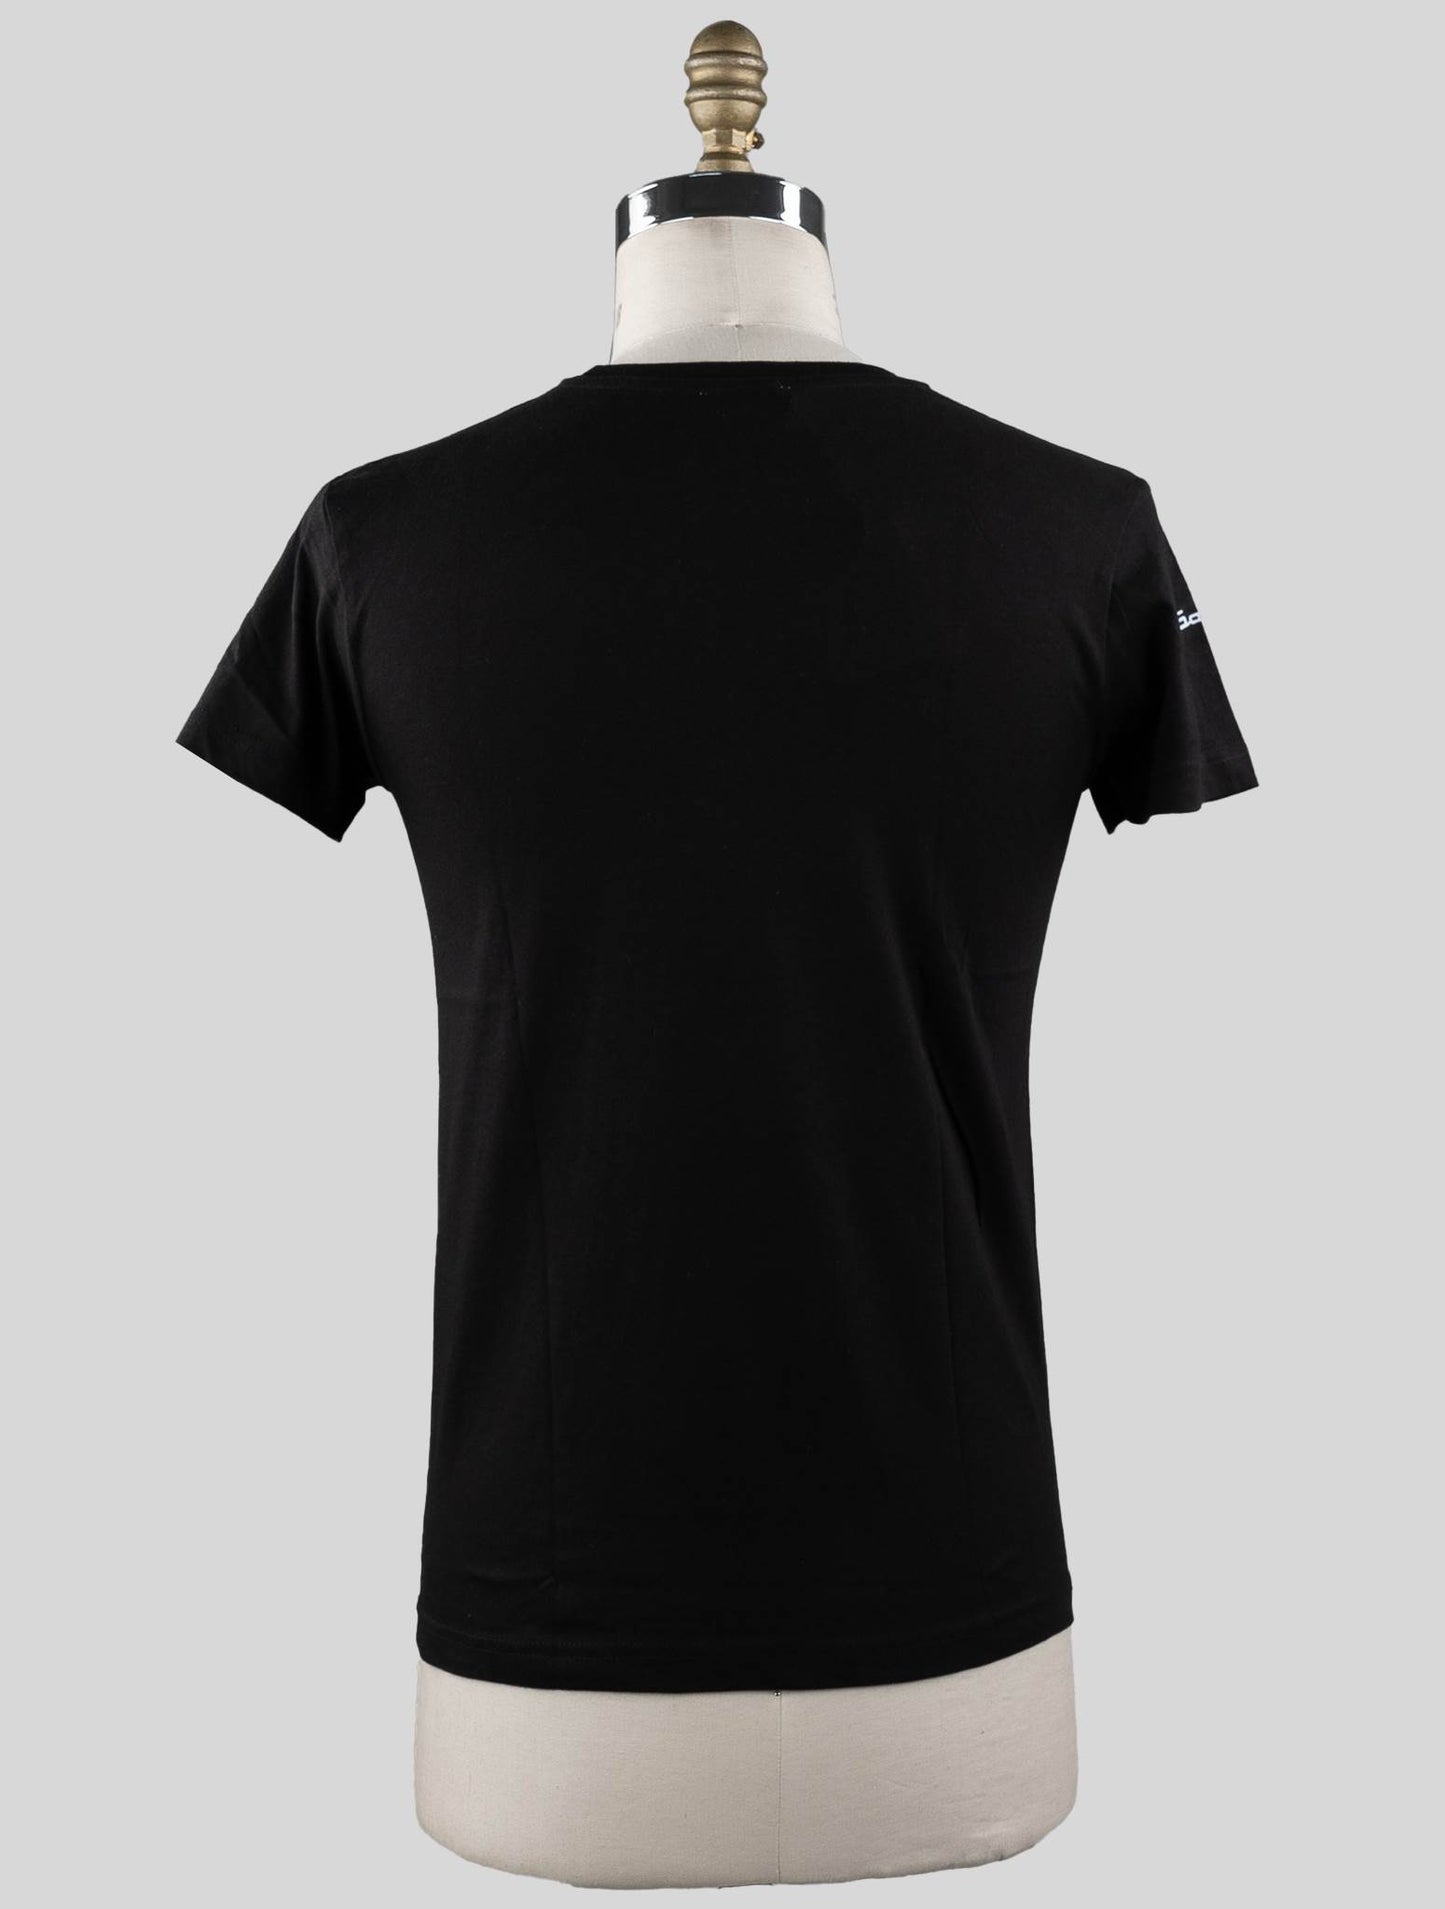 T-shirt Sartorio Napoli Black Cotton Edição Especial